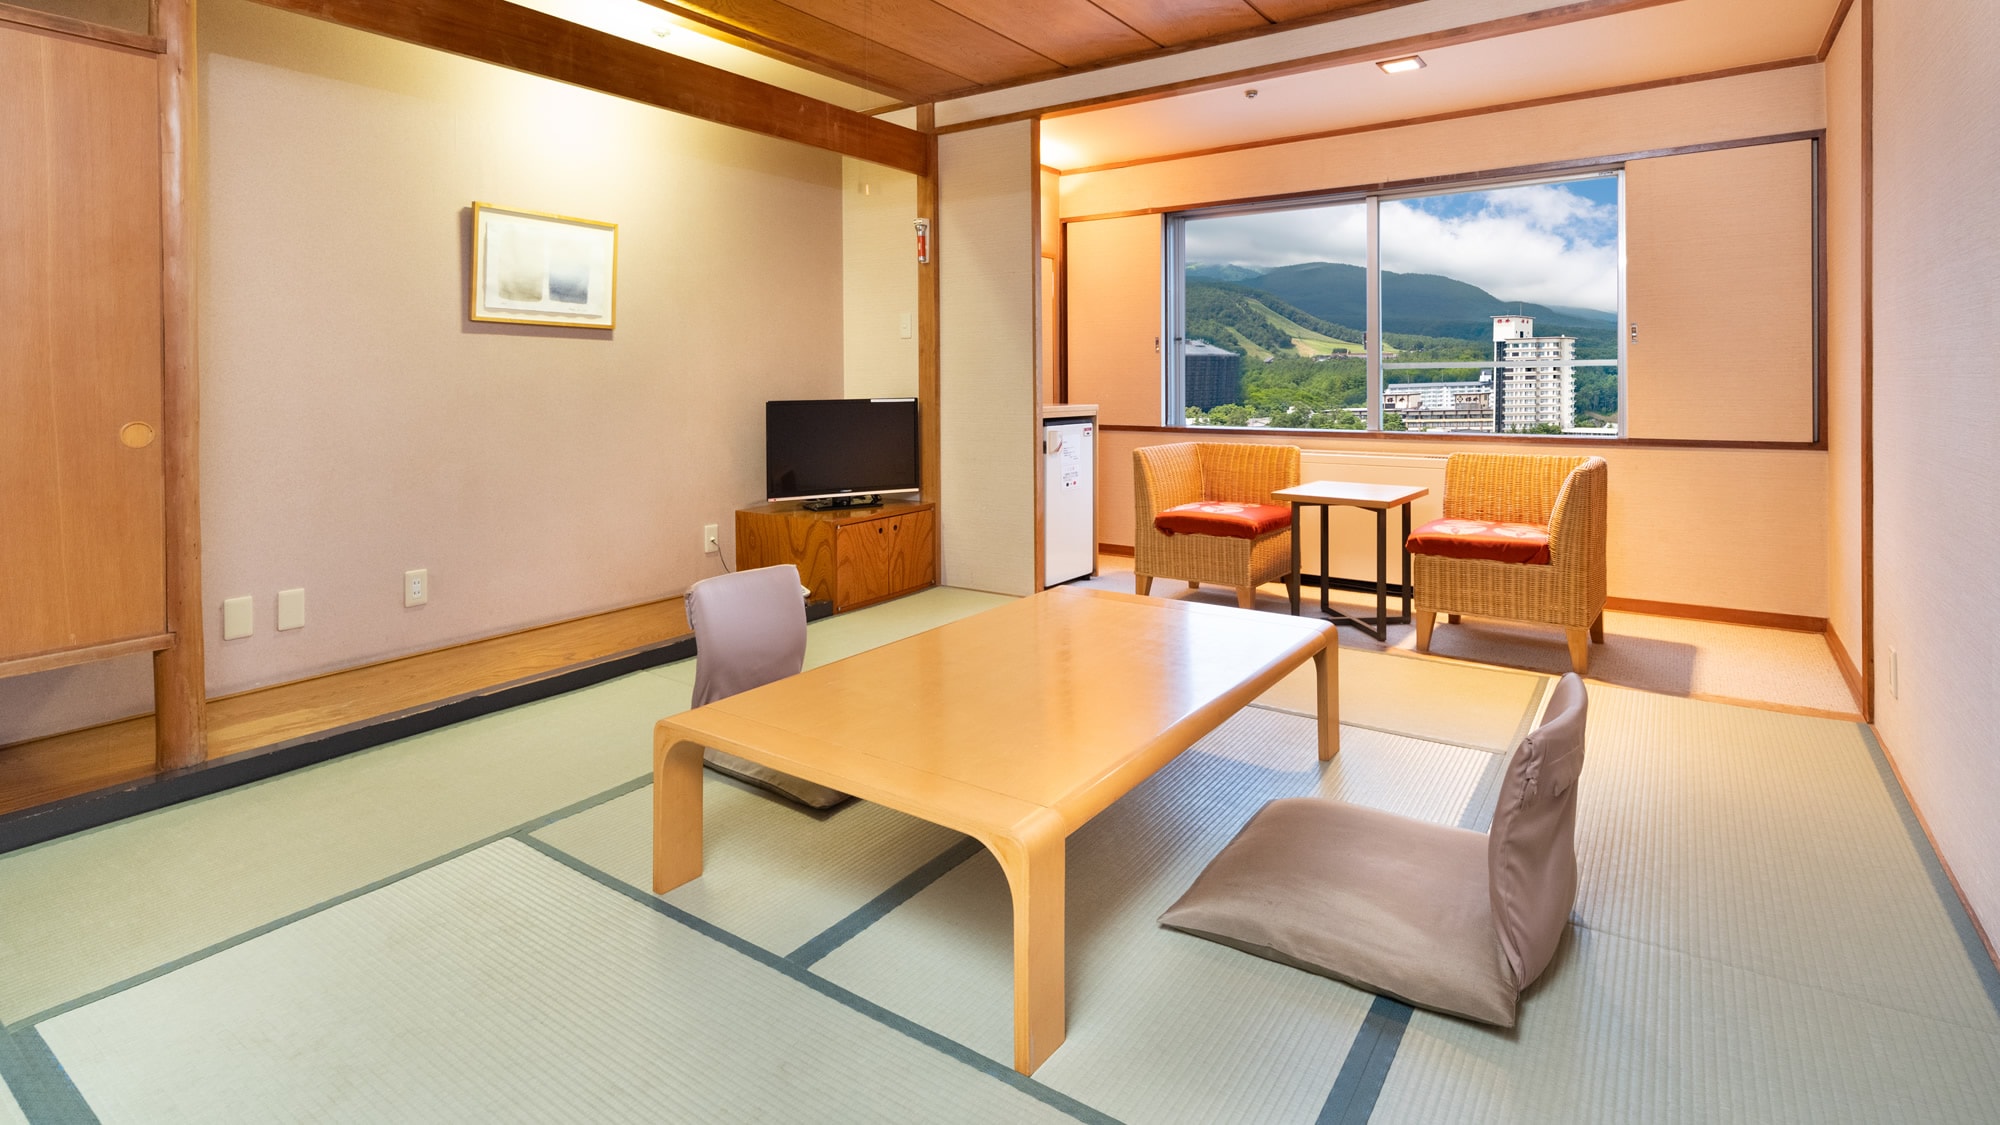 [ห้องสไตล์ญี่ปุ่น 10 เสื่อทาทามิ] เพลิดเพลินกับสี่ฤดูกาลของ Kusatsu จากหน้าต่างแสงแดดสดใส